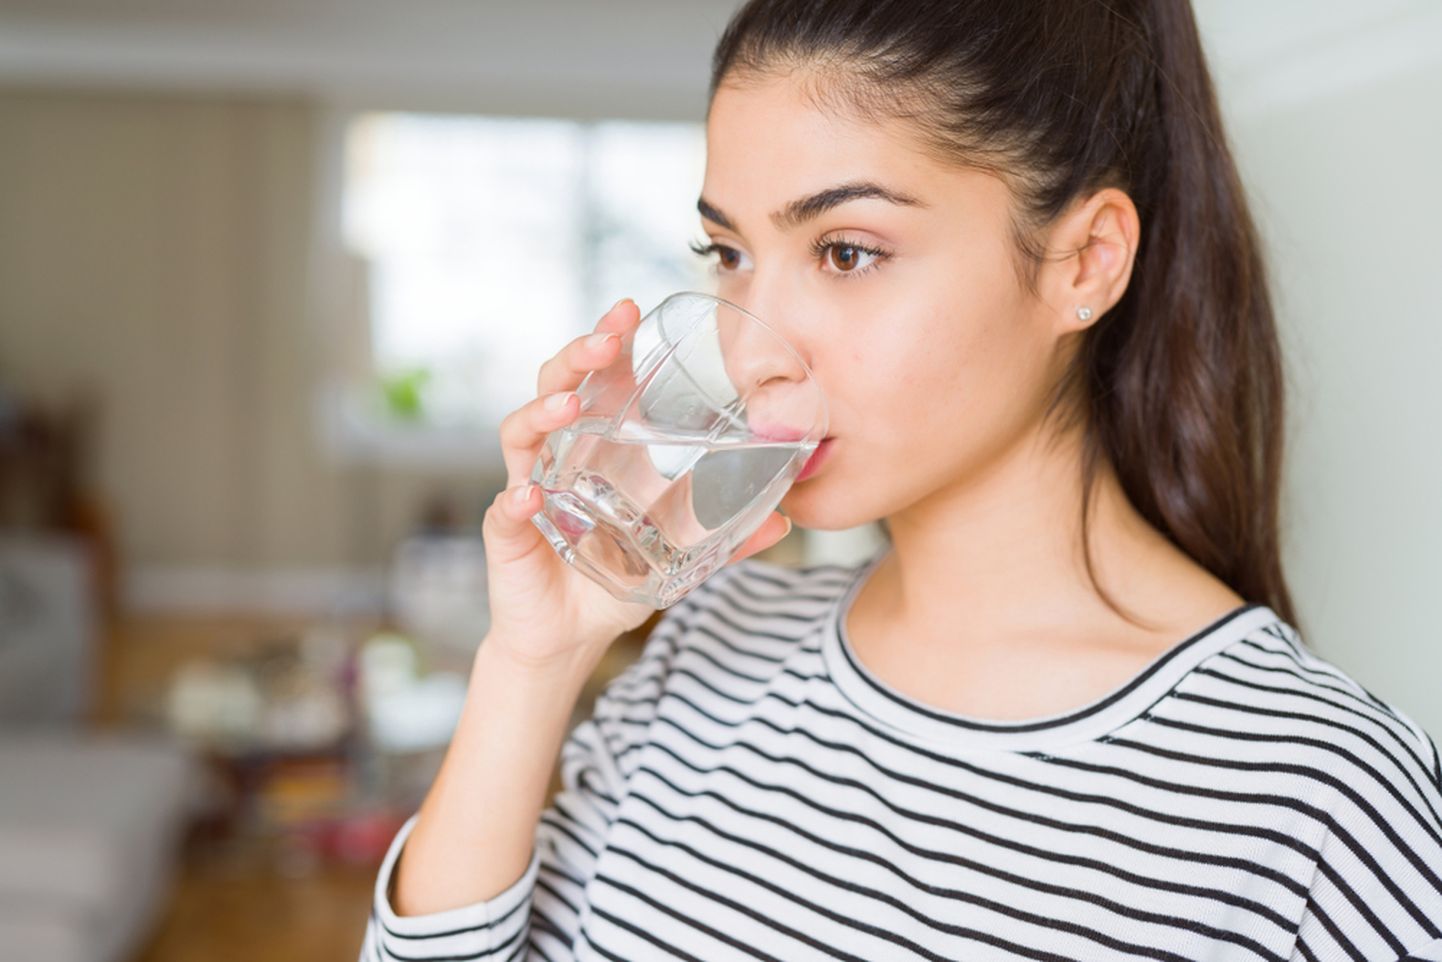 Kas sina jood piisavalt vett?